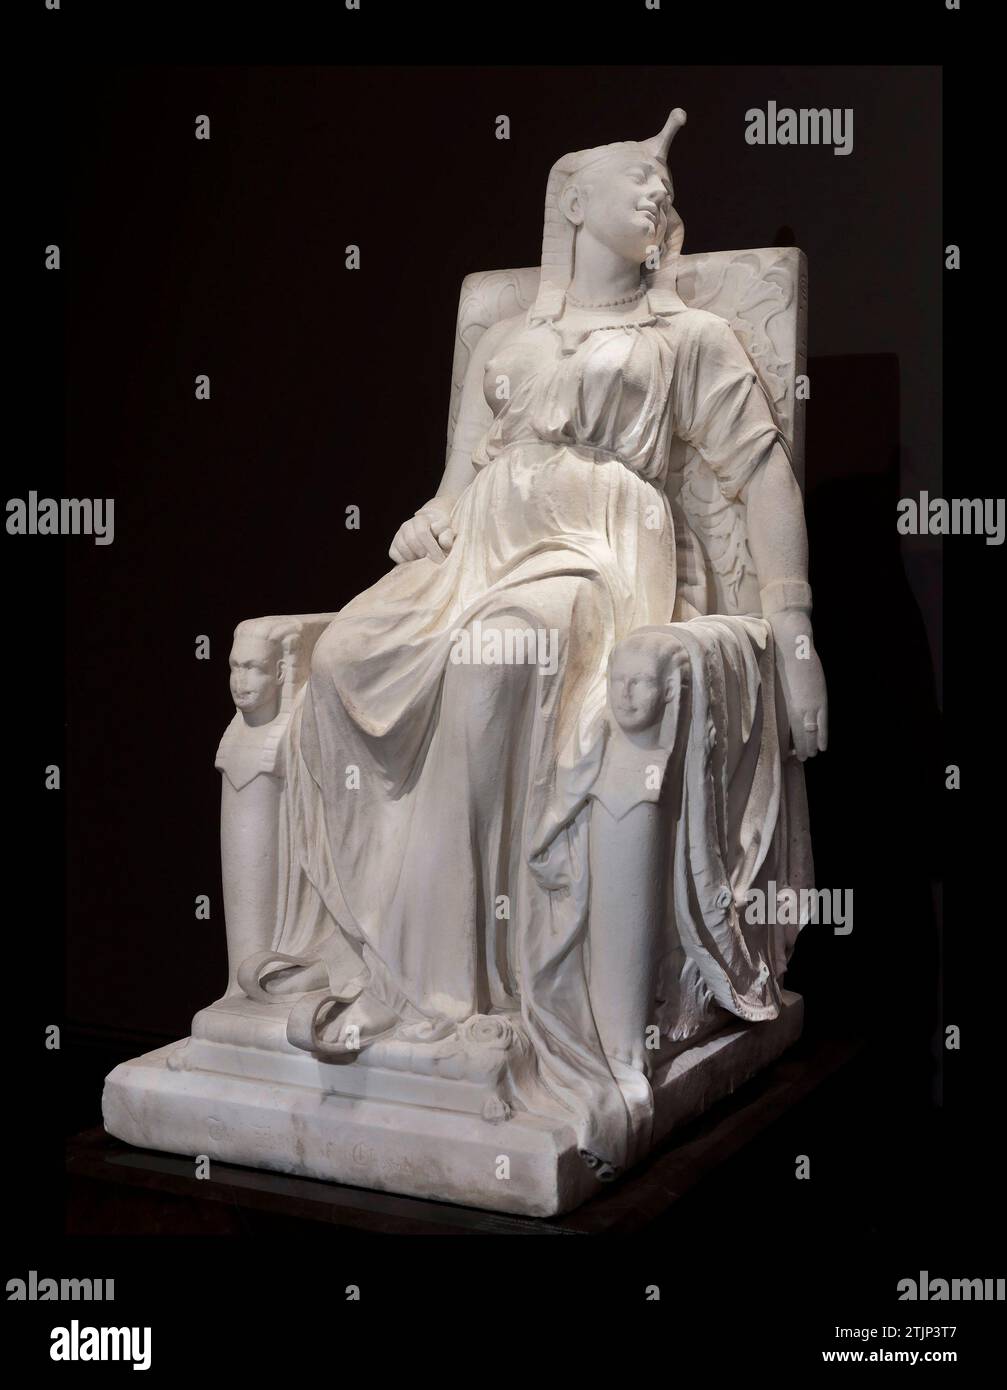 La morte di Cleopatra dello scultore Edmonia Lewis. Cleopatra (69-30 a.C.), la leggendaria regina d'Egitto del 51-30 a.C., è spesso meglio conosciuta per il suo drammatico suicidio, presumibilmente per il morso fatale di un serpente velenoso. Qui, Edmonia Lewis ritrasse Cleopatra nel momento successivo alla sua morte, indossando il suo abbigliamento reale, in maestoso riposo su un trono. Le identiche teste di sfinge che fiancheggiano il trono rappresentano i gemelli che portava con il generale romano Marc Antony. Una versione ottimizzata di un'immagine di una scultura originale allo Smithsonian American Art Museum, Foto Stock